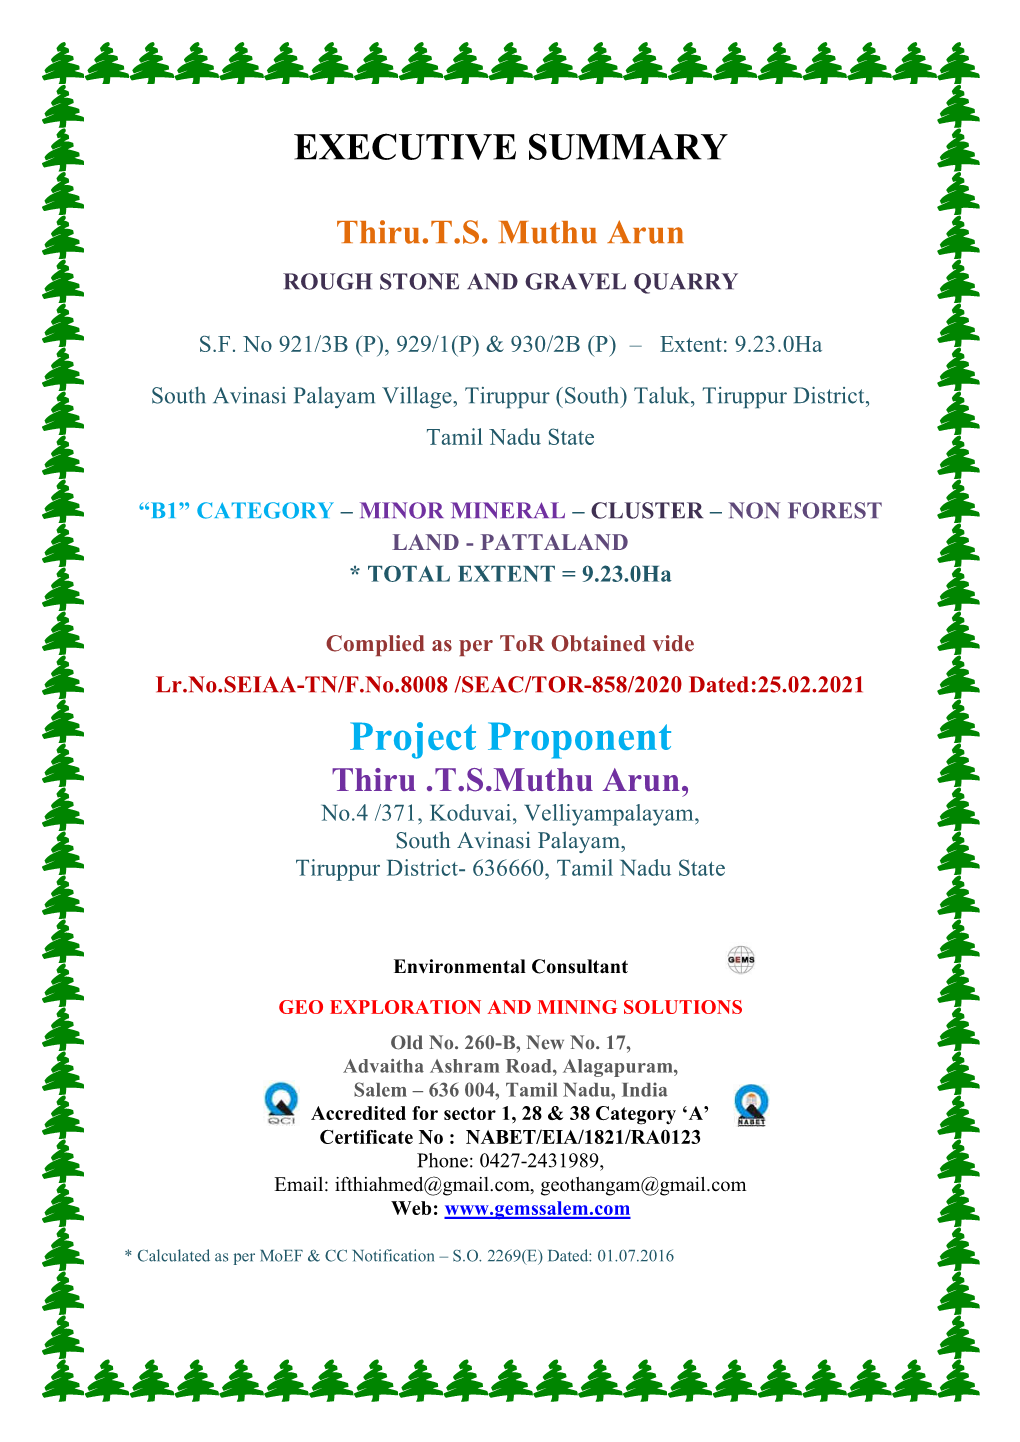 Project Proponent Thiru .T.S.Muthu Arun, No.4 /371, Koduvai, Velliyampalayam, South Avinasi Palayam, Tiruppur District- 636660, Tamil Nadu State